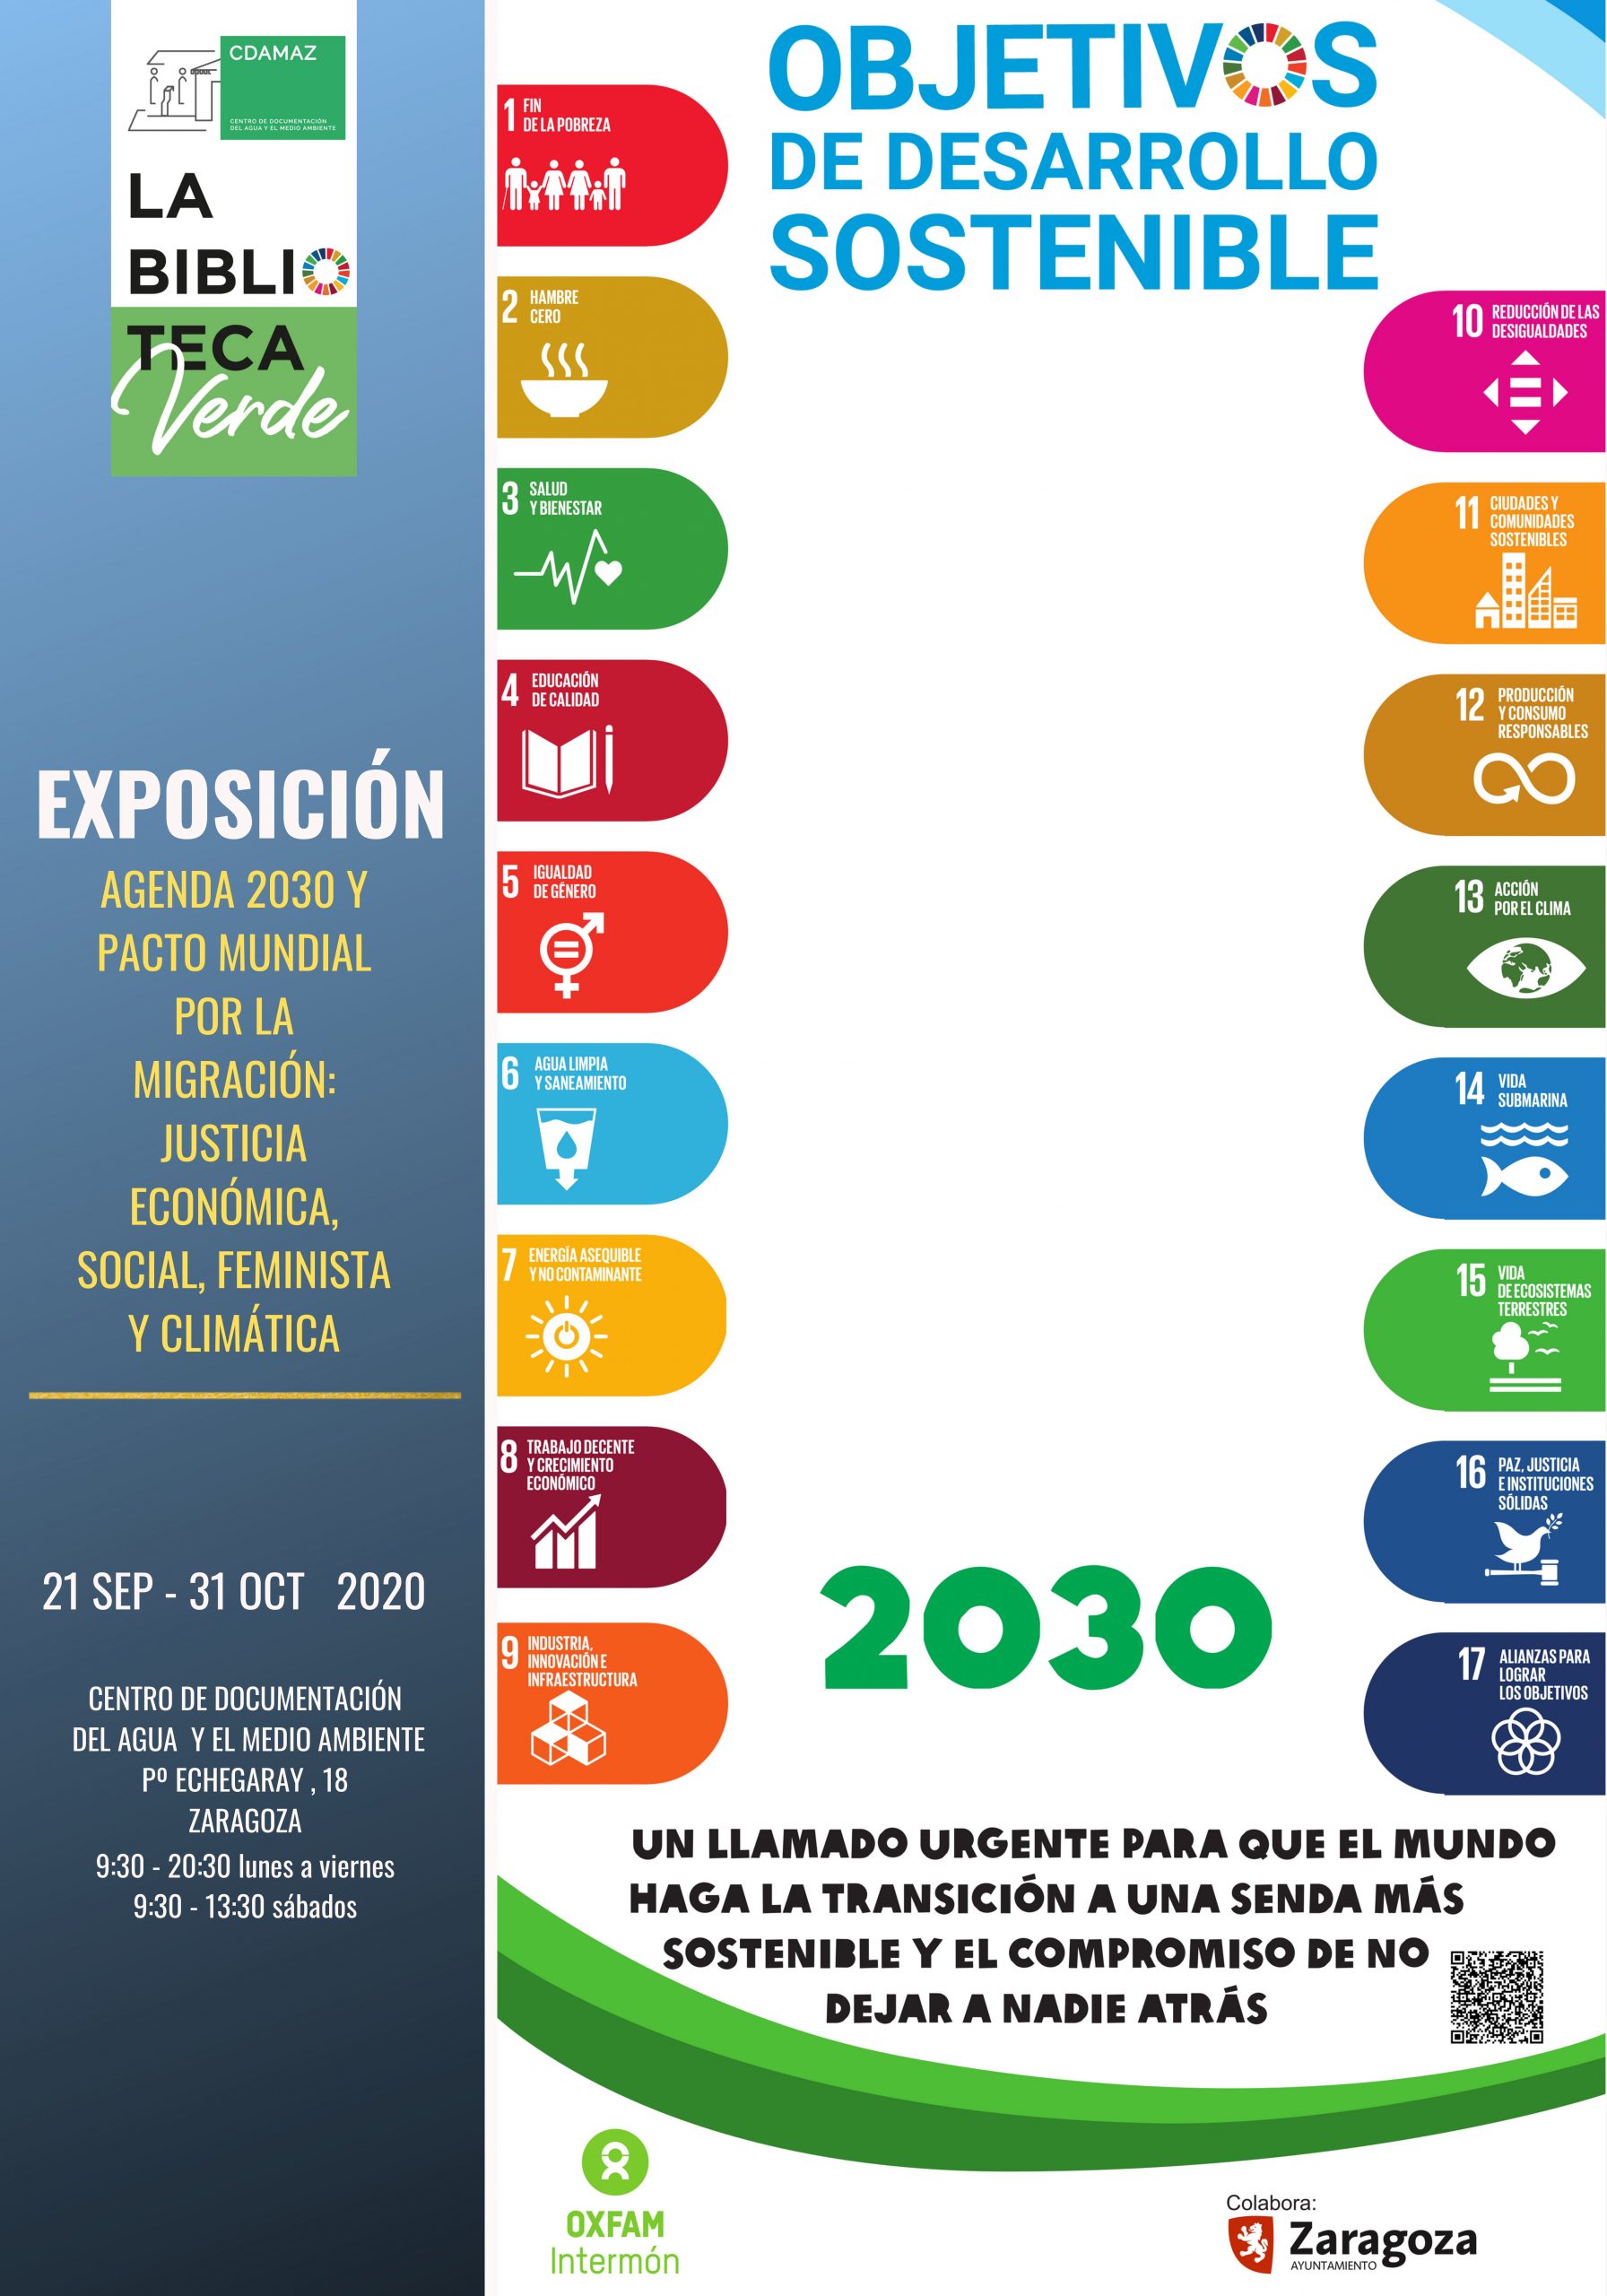 Cartel Expo Oxfam Intermon ODS Justicia eca social de genero y climatica